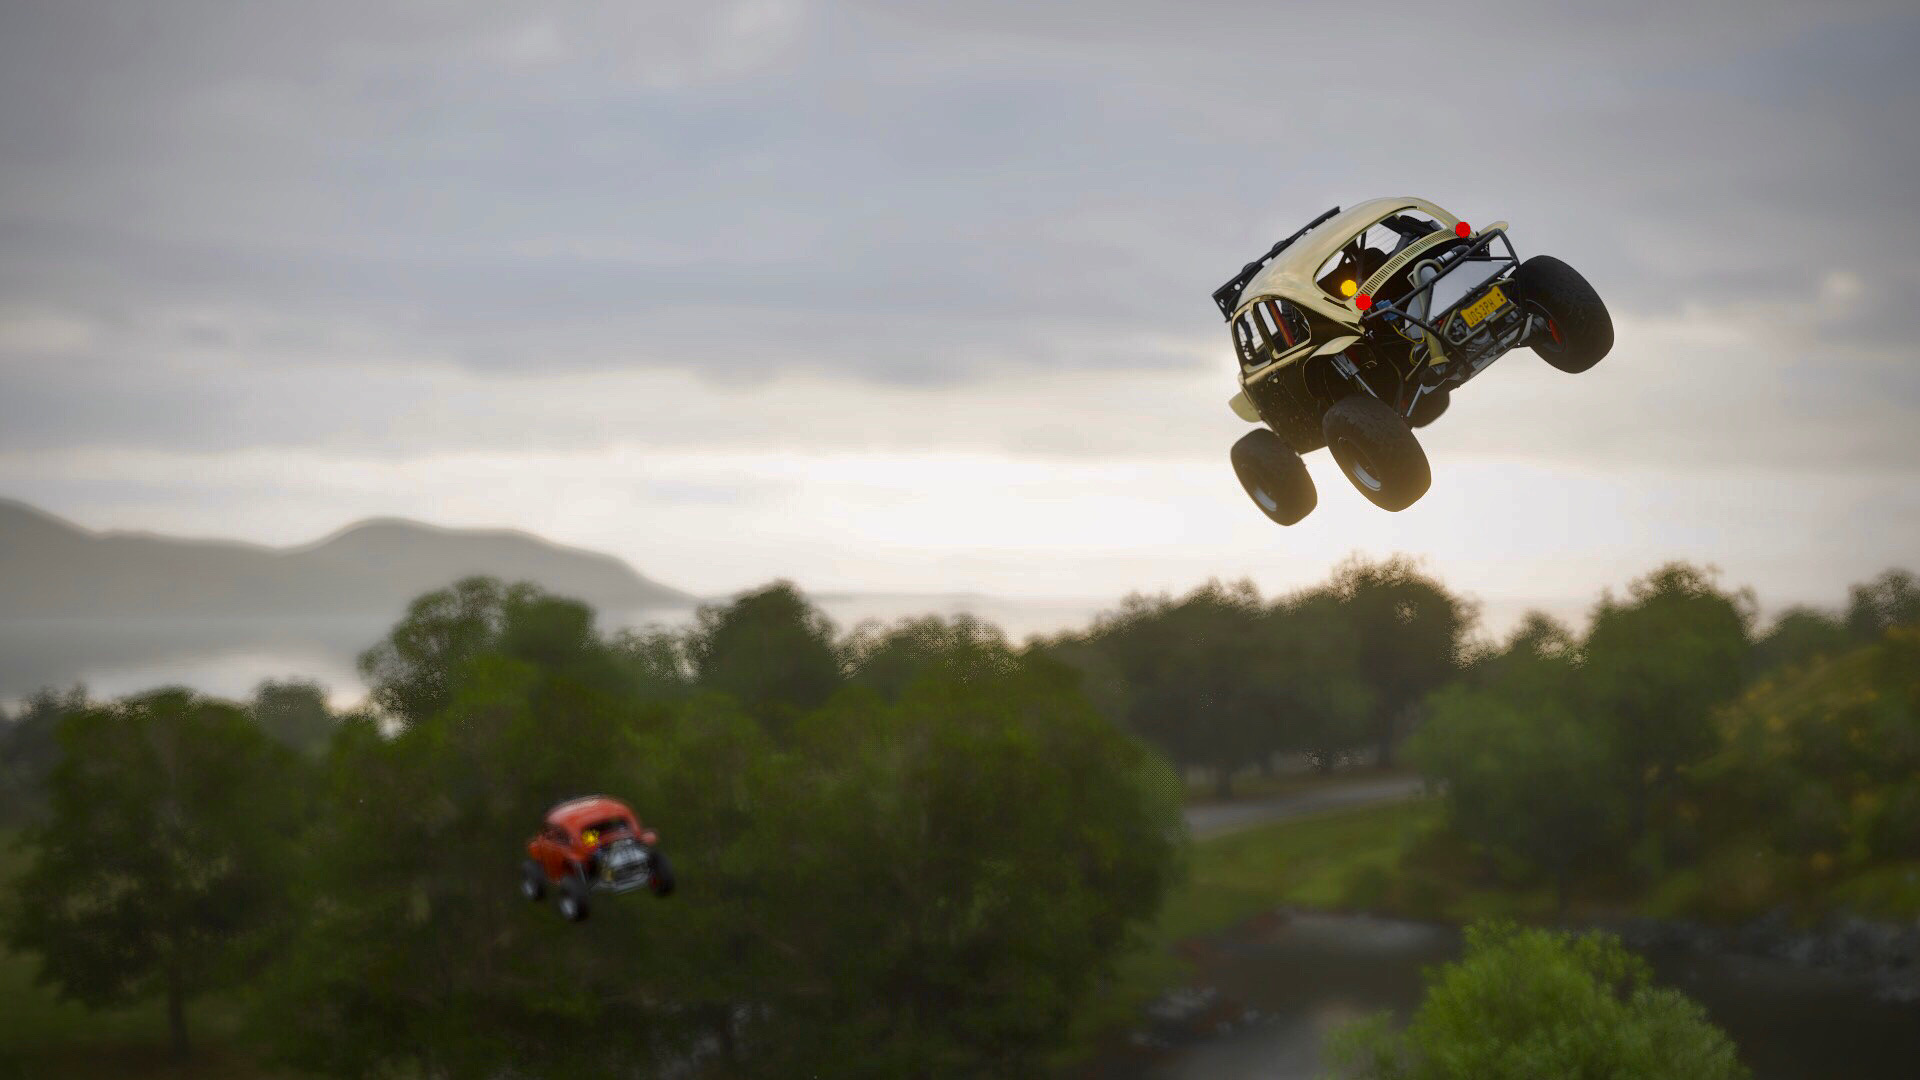 Forza Horizon Racer Video Games Car Screen Shot 1920x1080